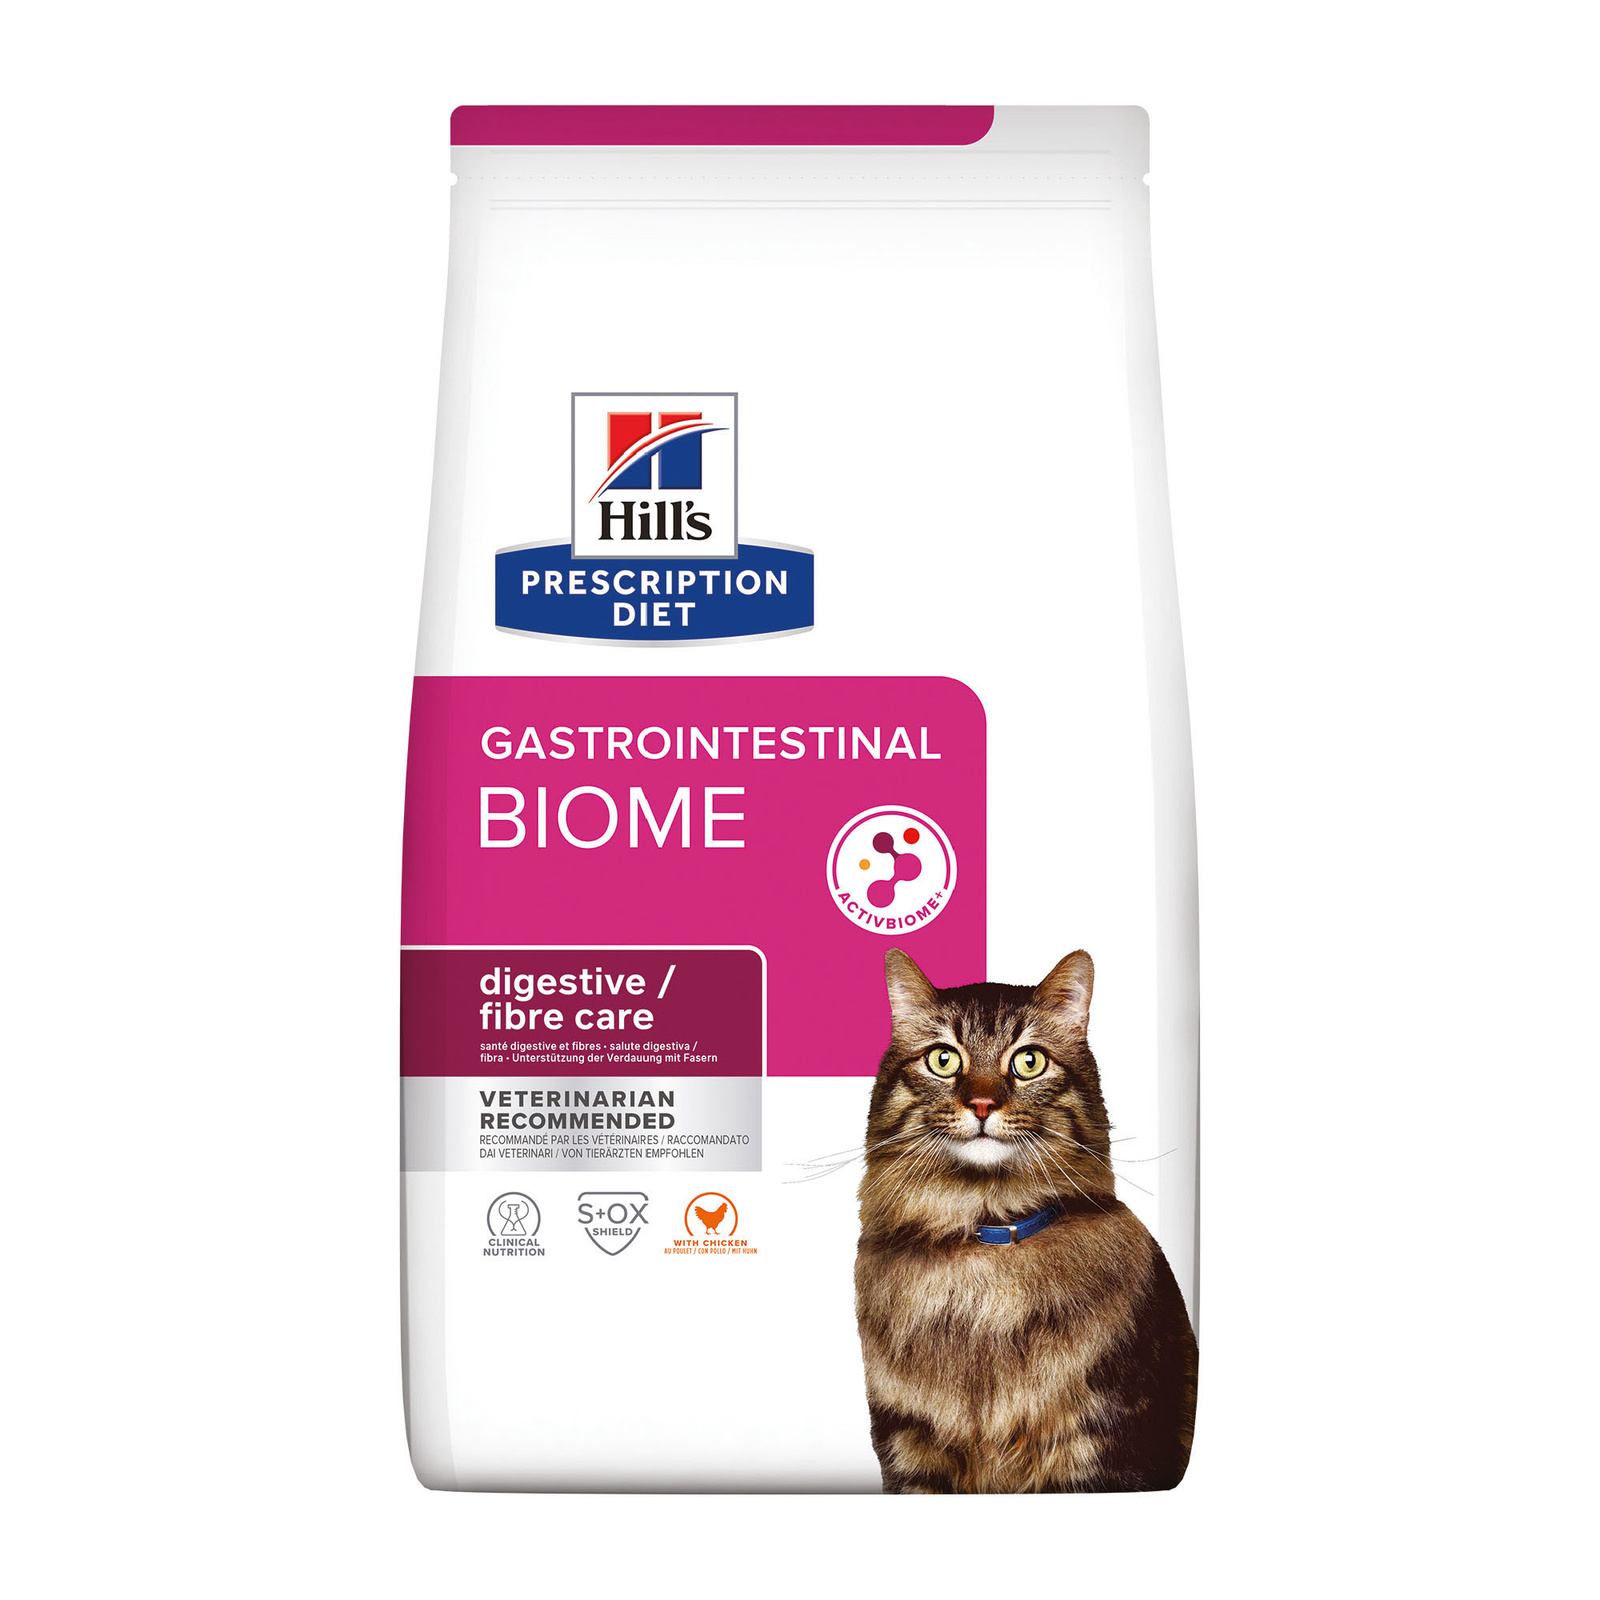 Hill's Prescription Diet Hill's Prescription Diet сухой диетический корм для кошек Biome при расстройствах пищеварения и для заботы о микробиоме кишечника, с курицей (1,5 кг) 37689